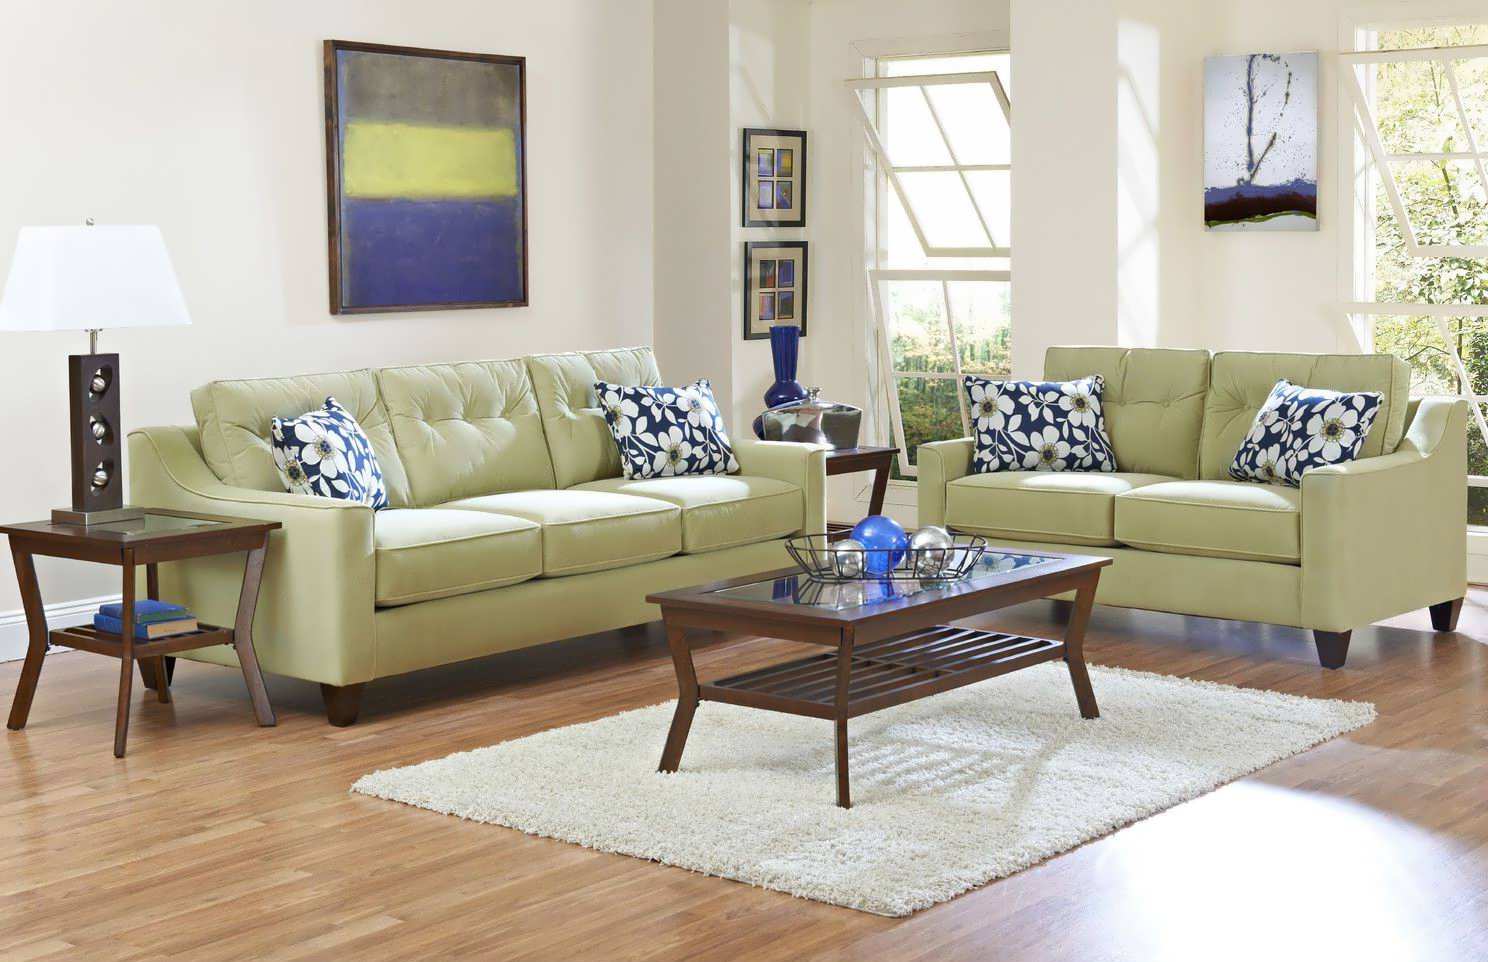 Minimalist Living Room Furniture Images 